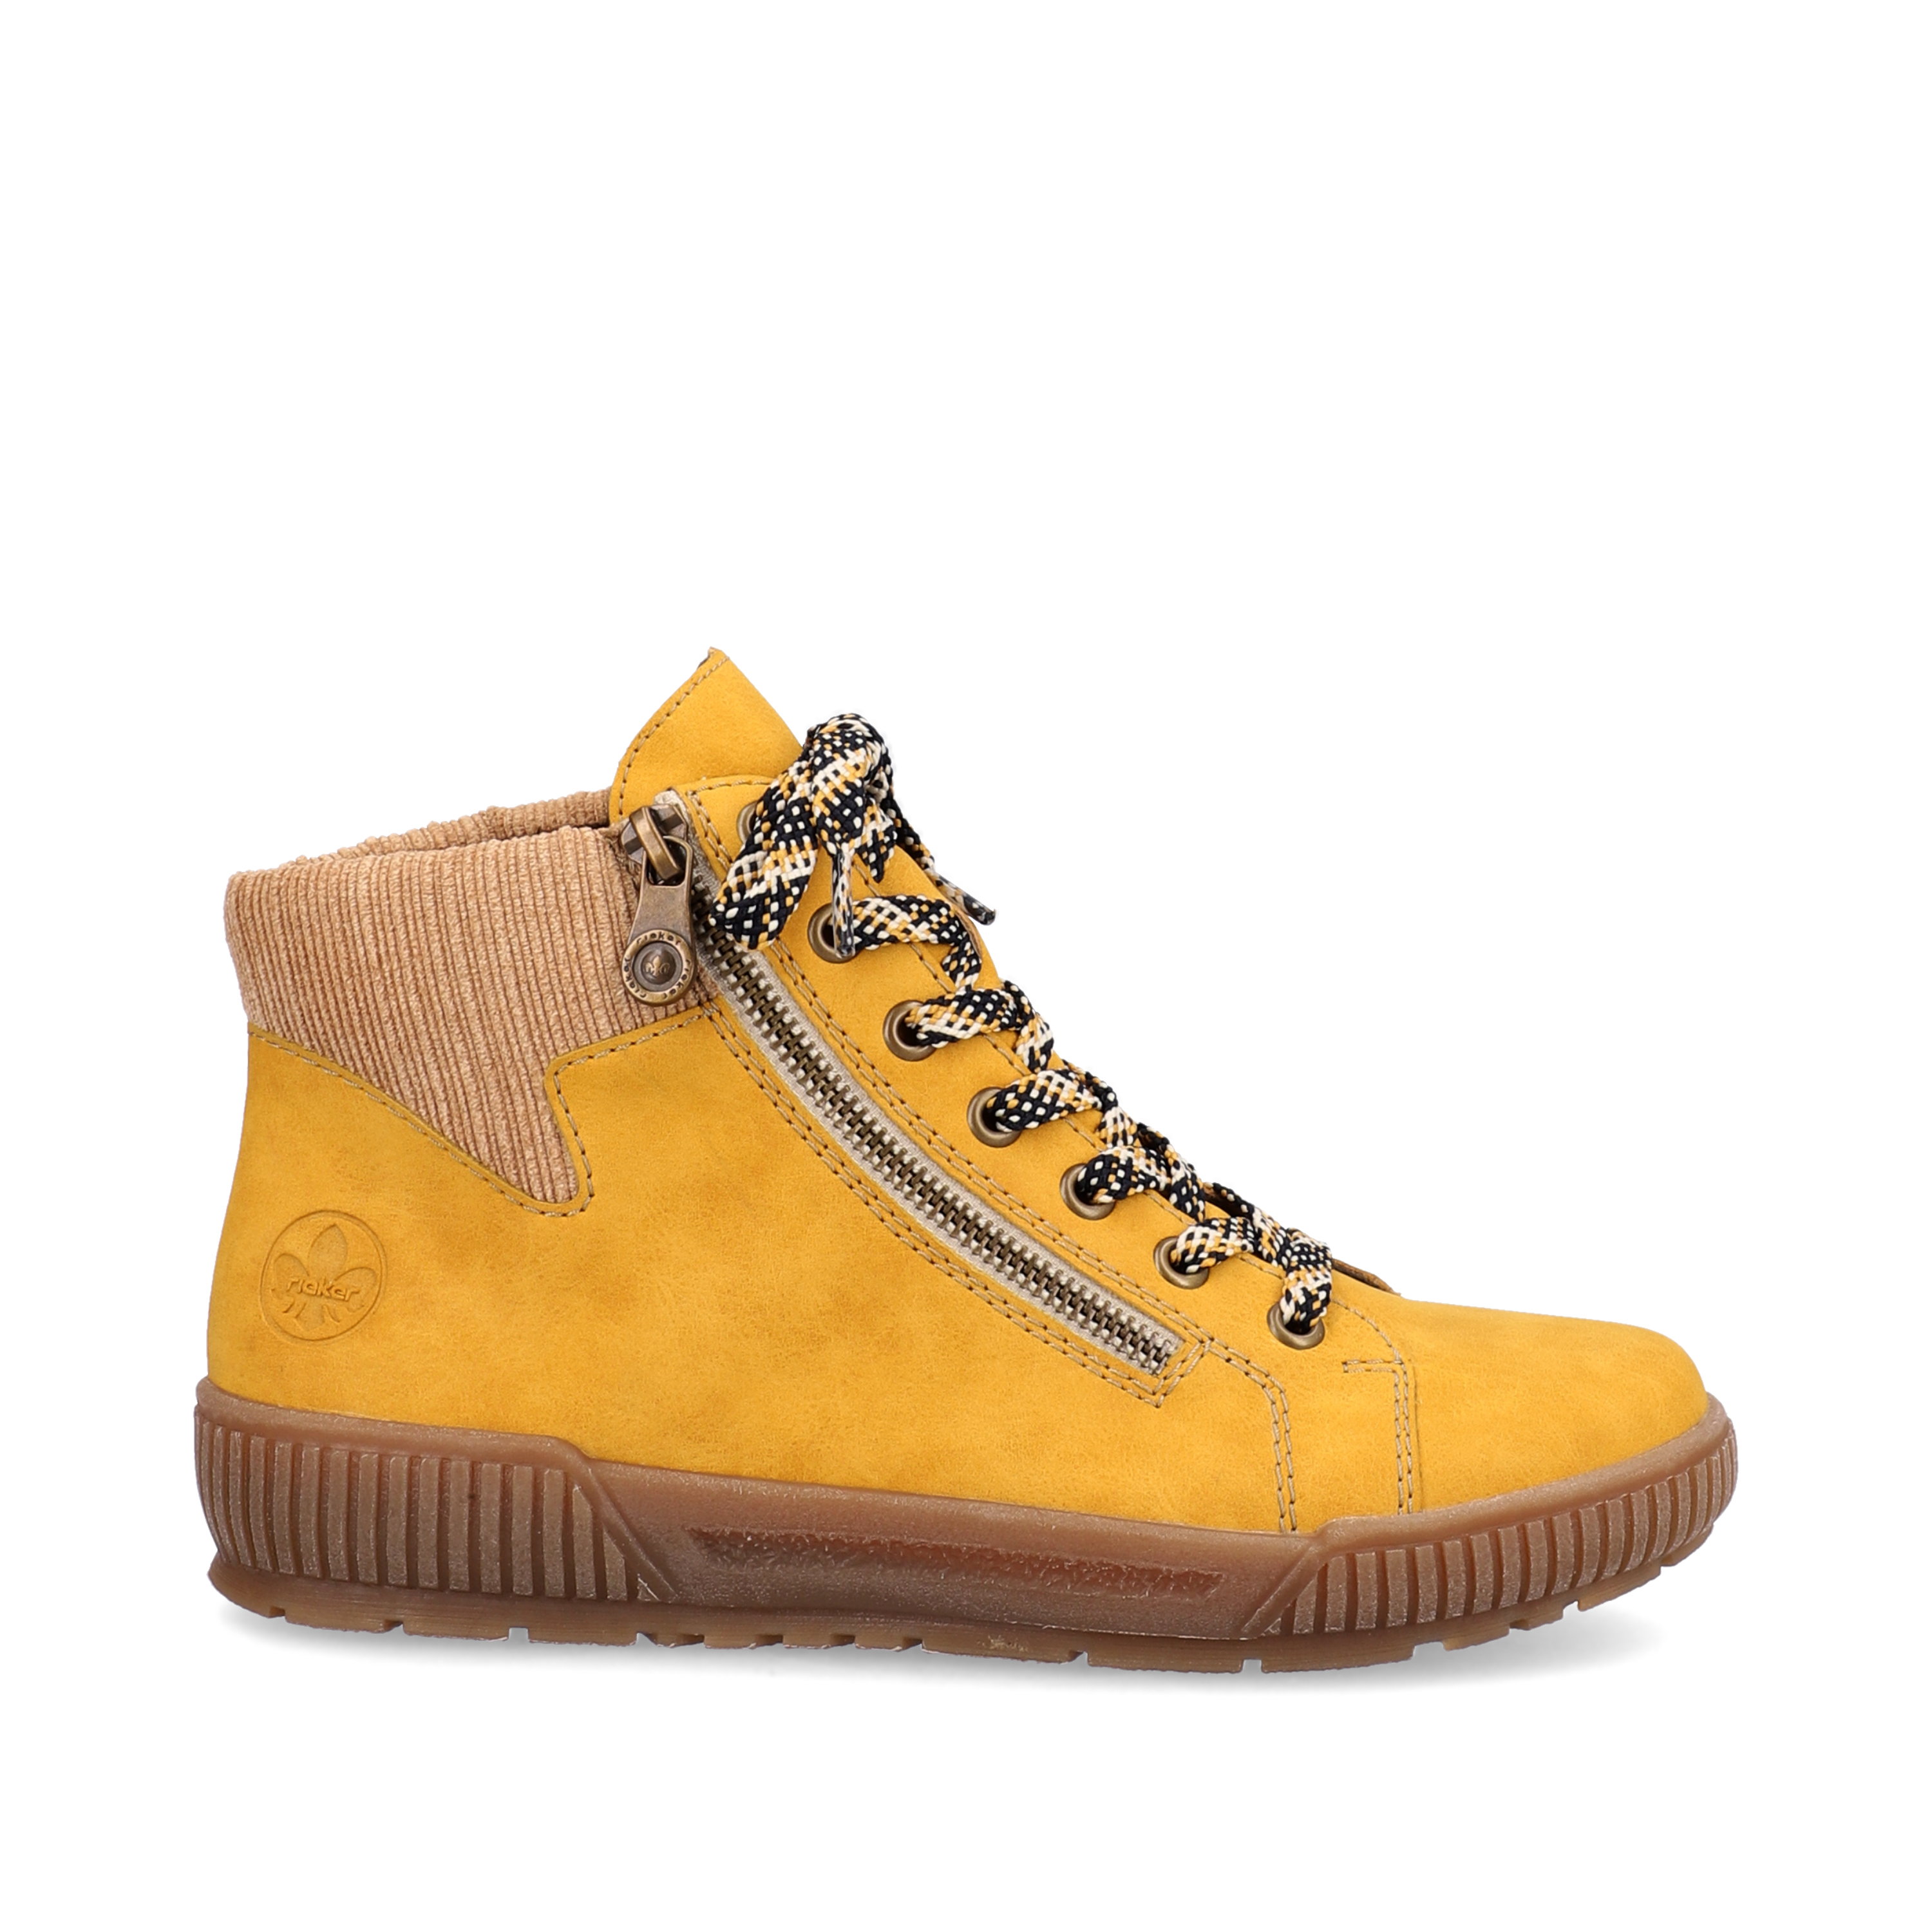 Baskets montantes jaunes pour femme marque Rieker. Référence N0719-68 Honig. Disponible chez Chauss'Family magasin de chaussures Issoire